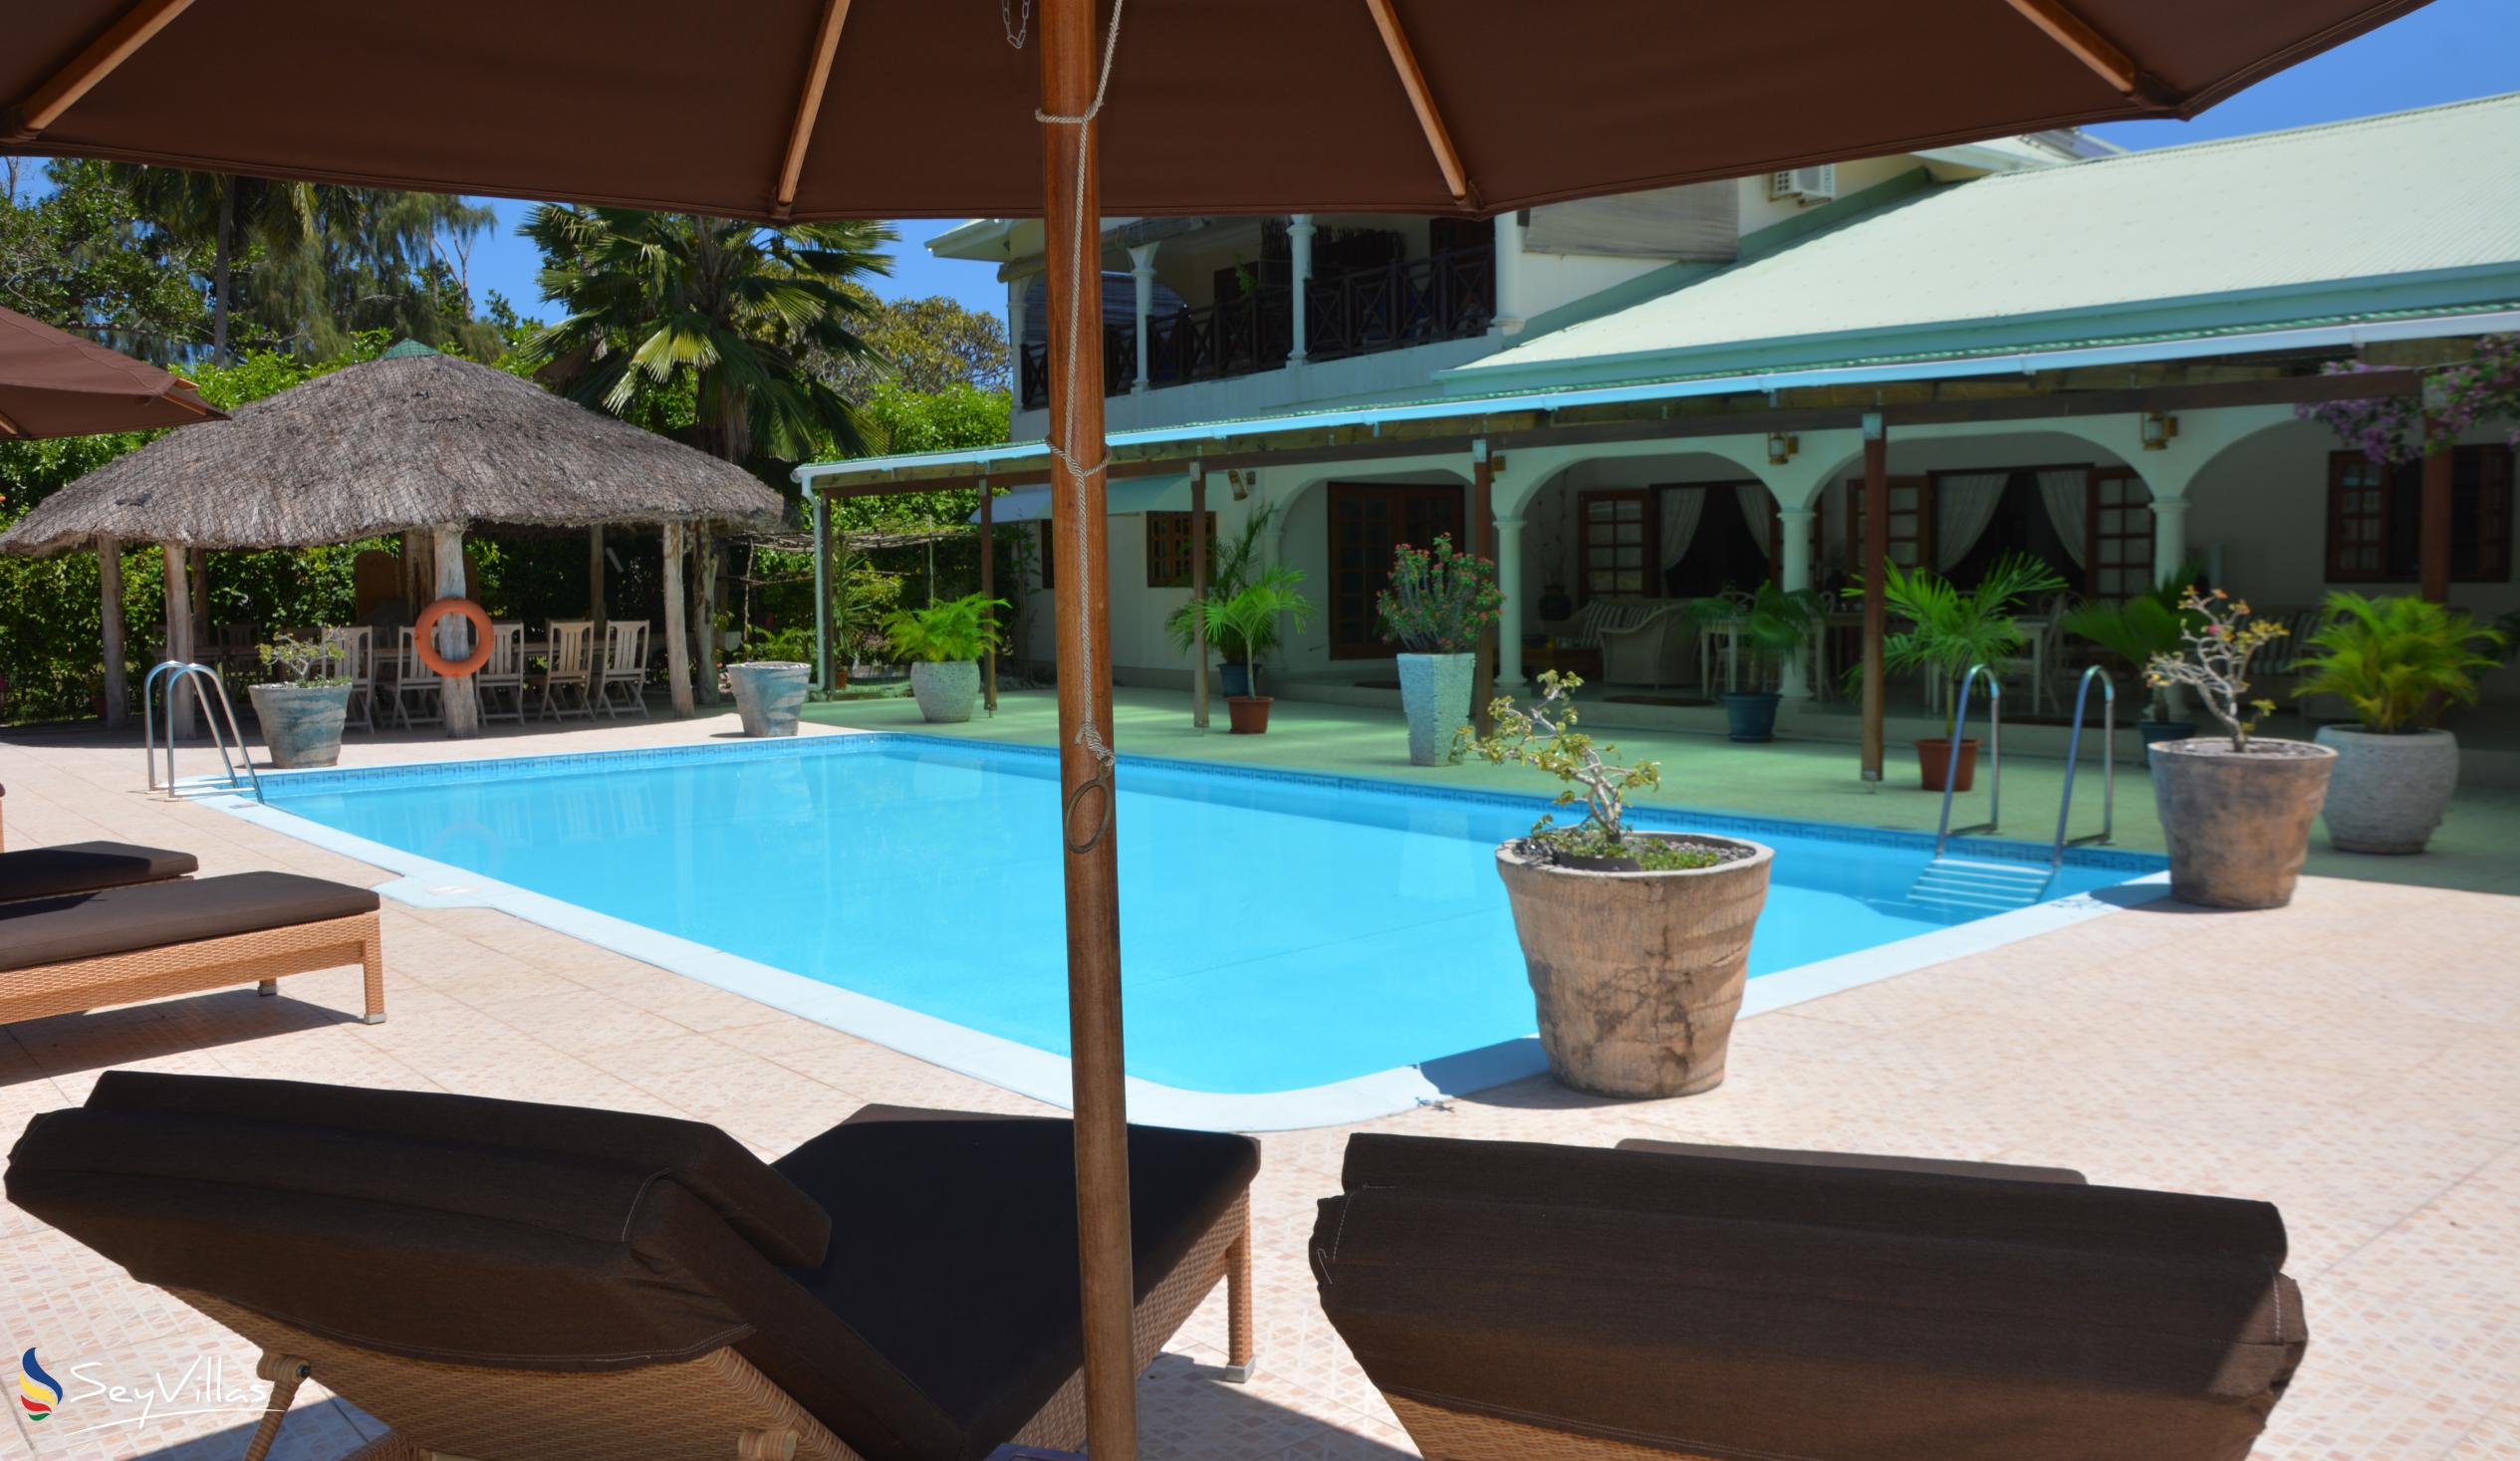 Foto 8: Villa de Cerf - Extérieur - Cerf Island (Seychelles)